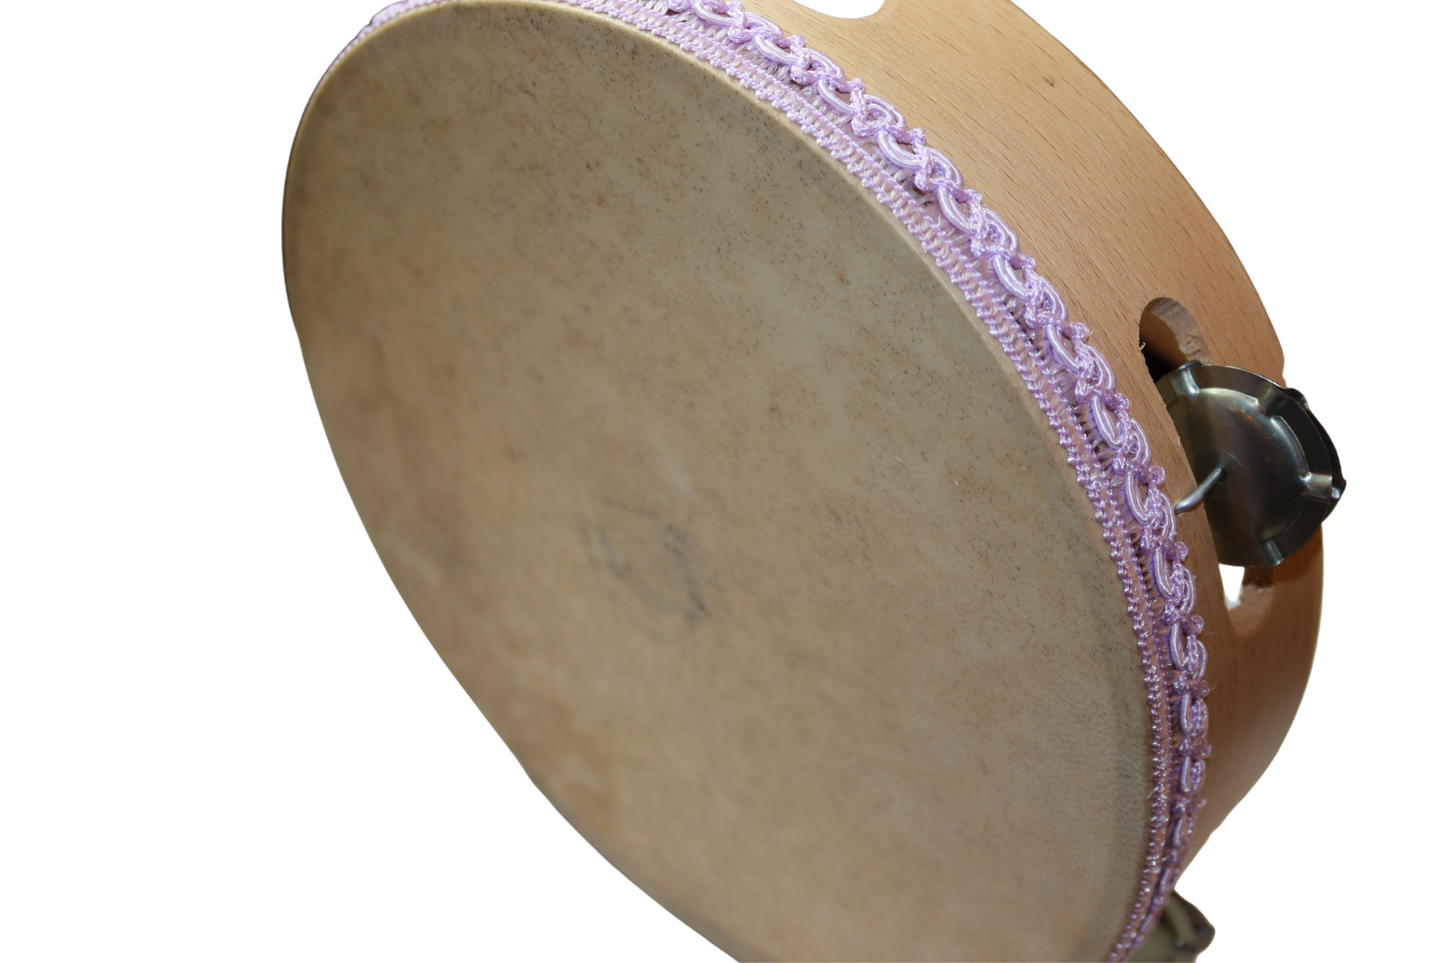 Tamburello per la tarantella , strumento a percussione di forma circolare, tipico della tradizione musicale popolare della Calabria.